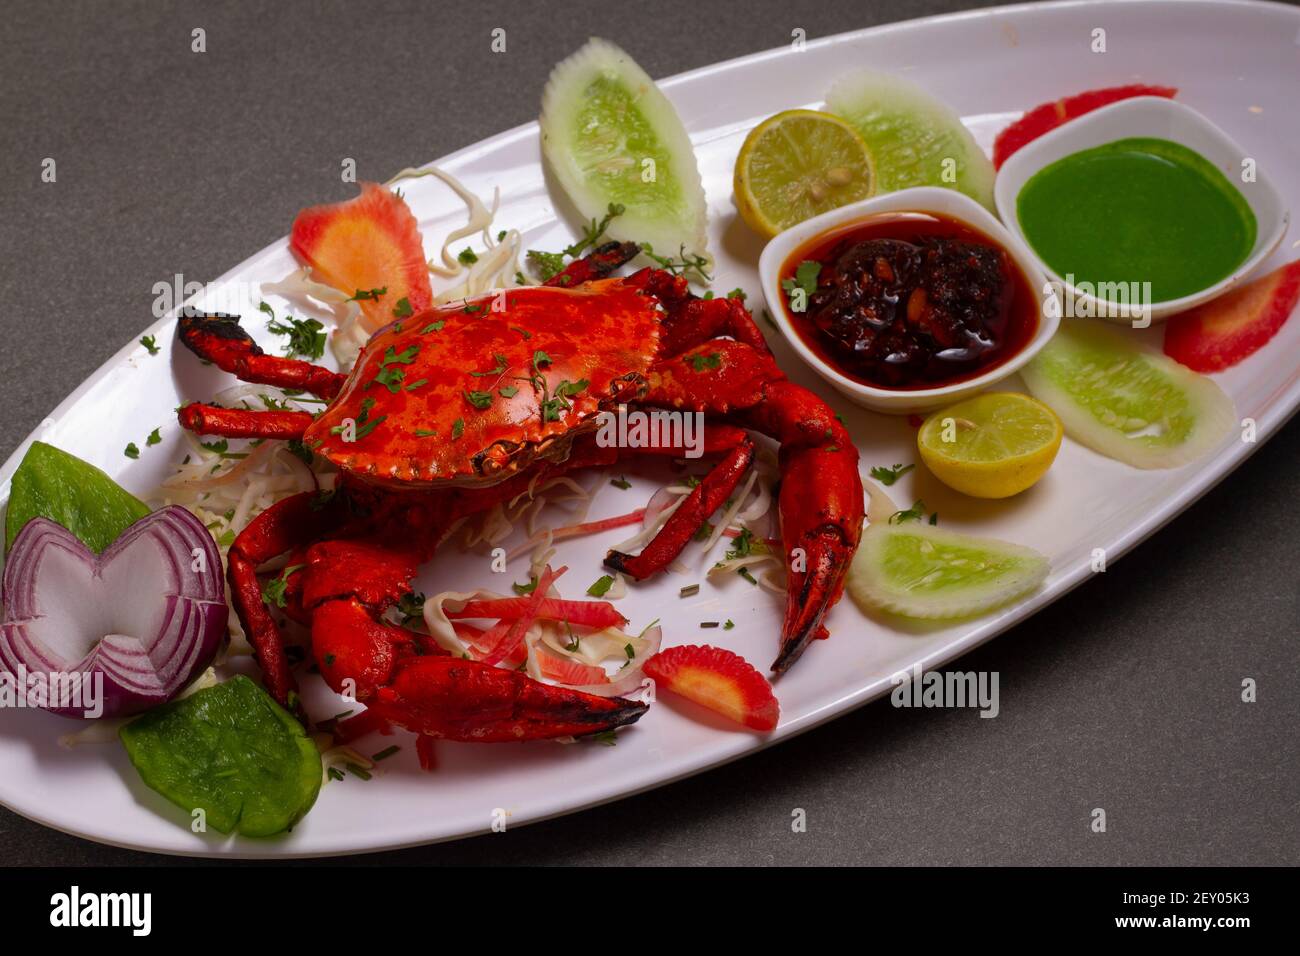 Tandoori crab Indian starter or main meal dish, stock photo. Stock Photo